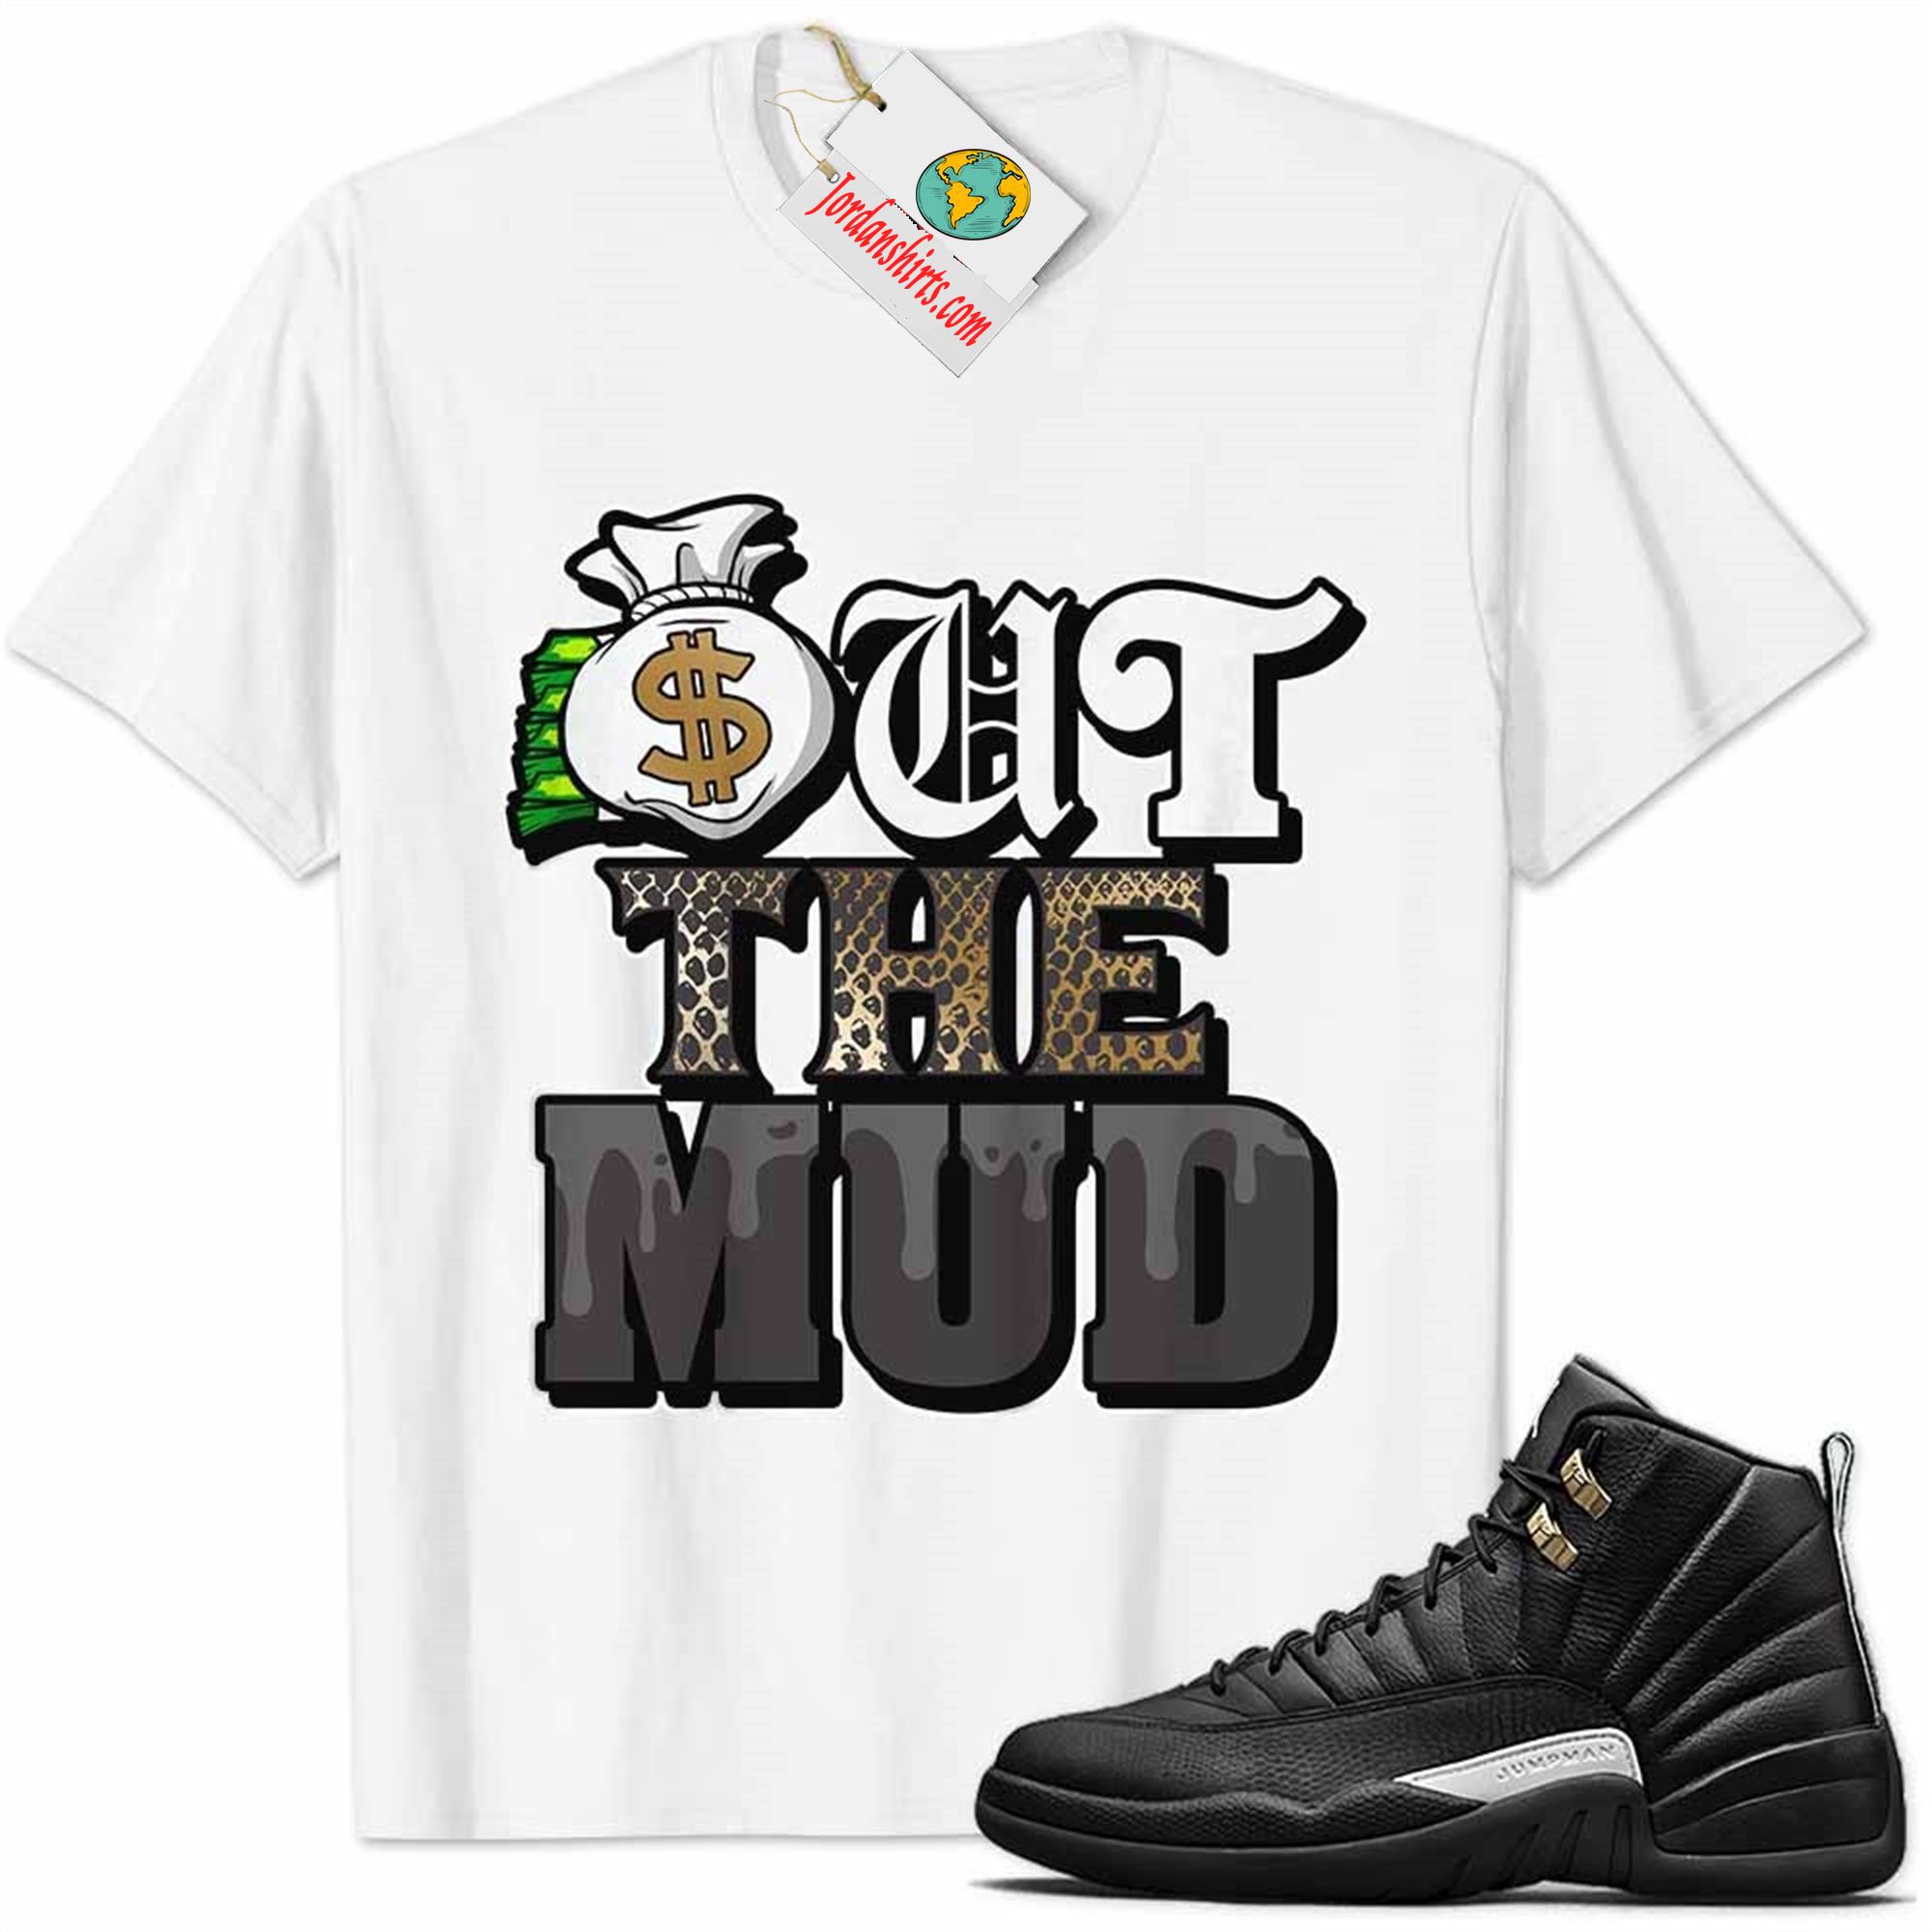 Jordan 12 Shirt, Jordan 12 Master Shirt Out The Mud Money Bag White Plus Size Up To 5xl